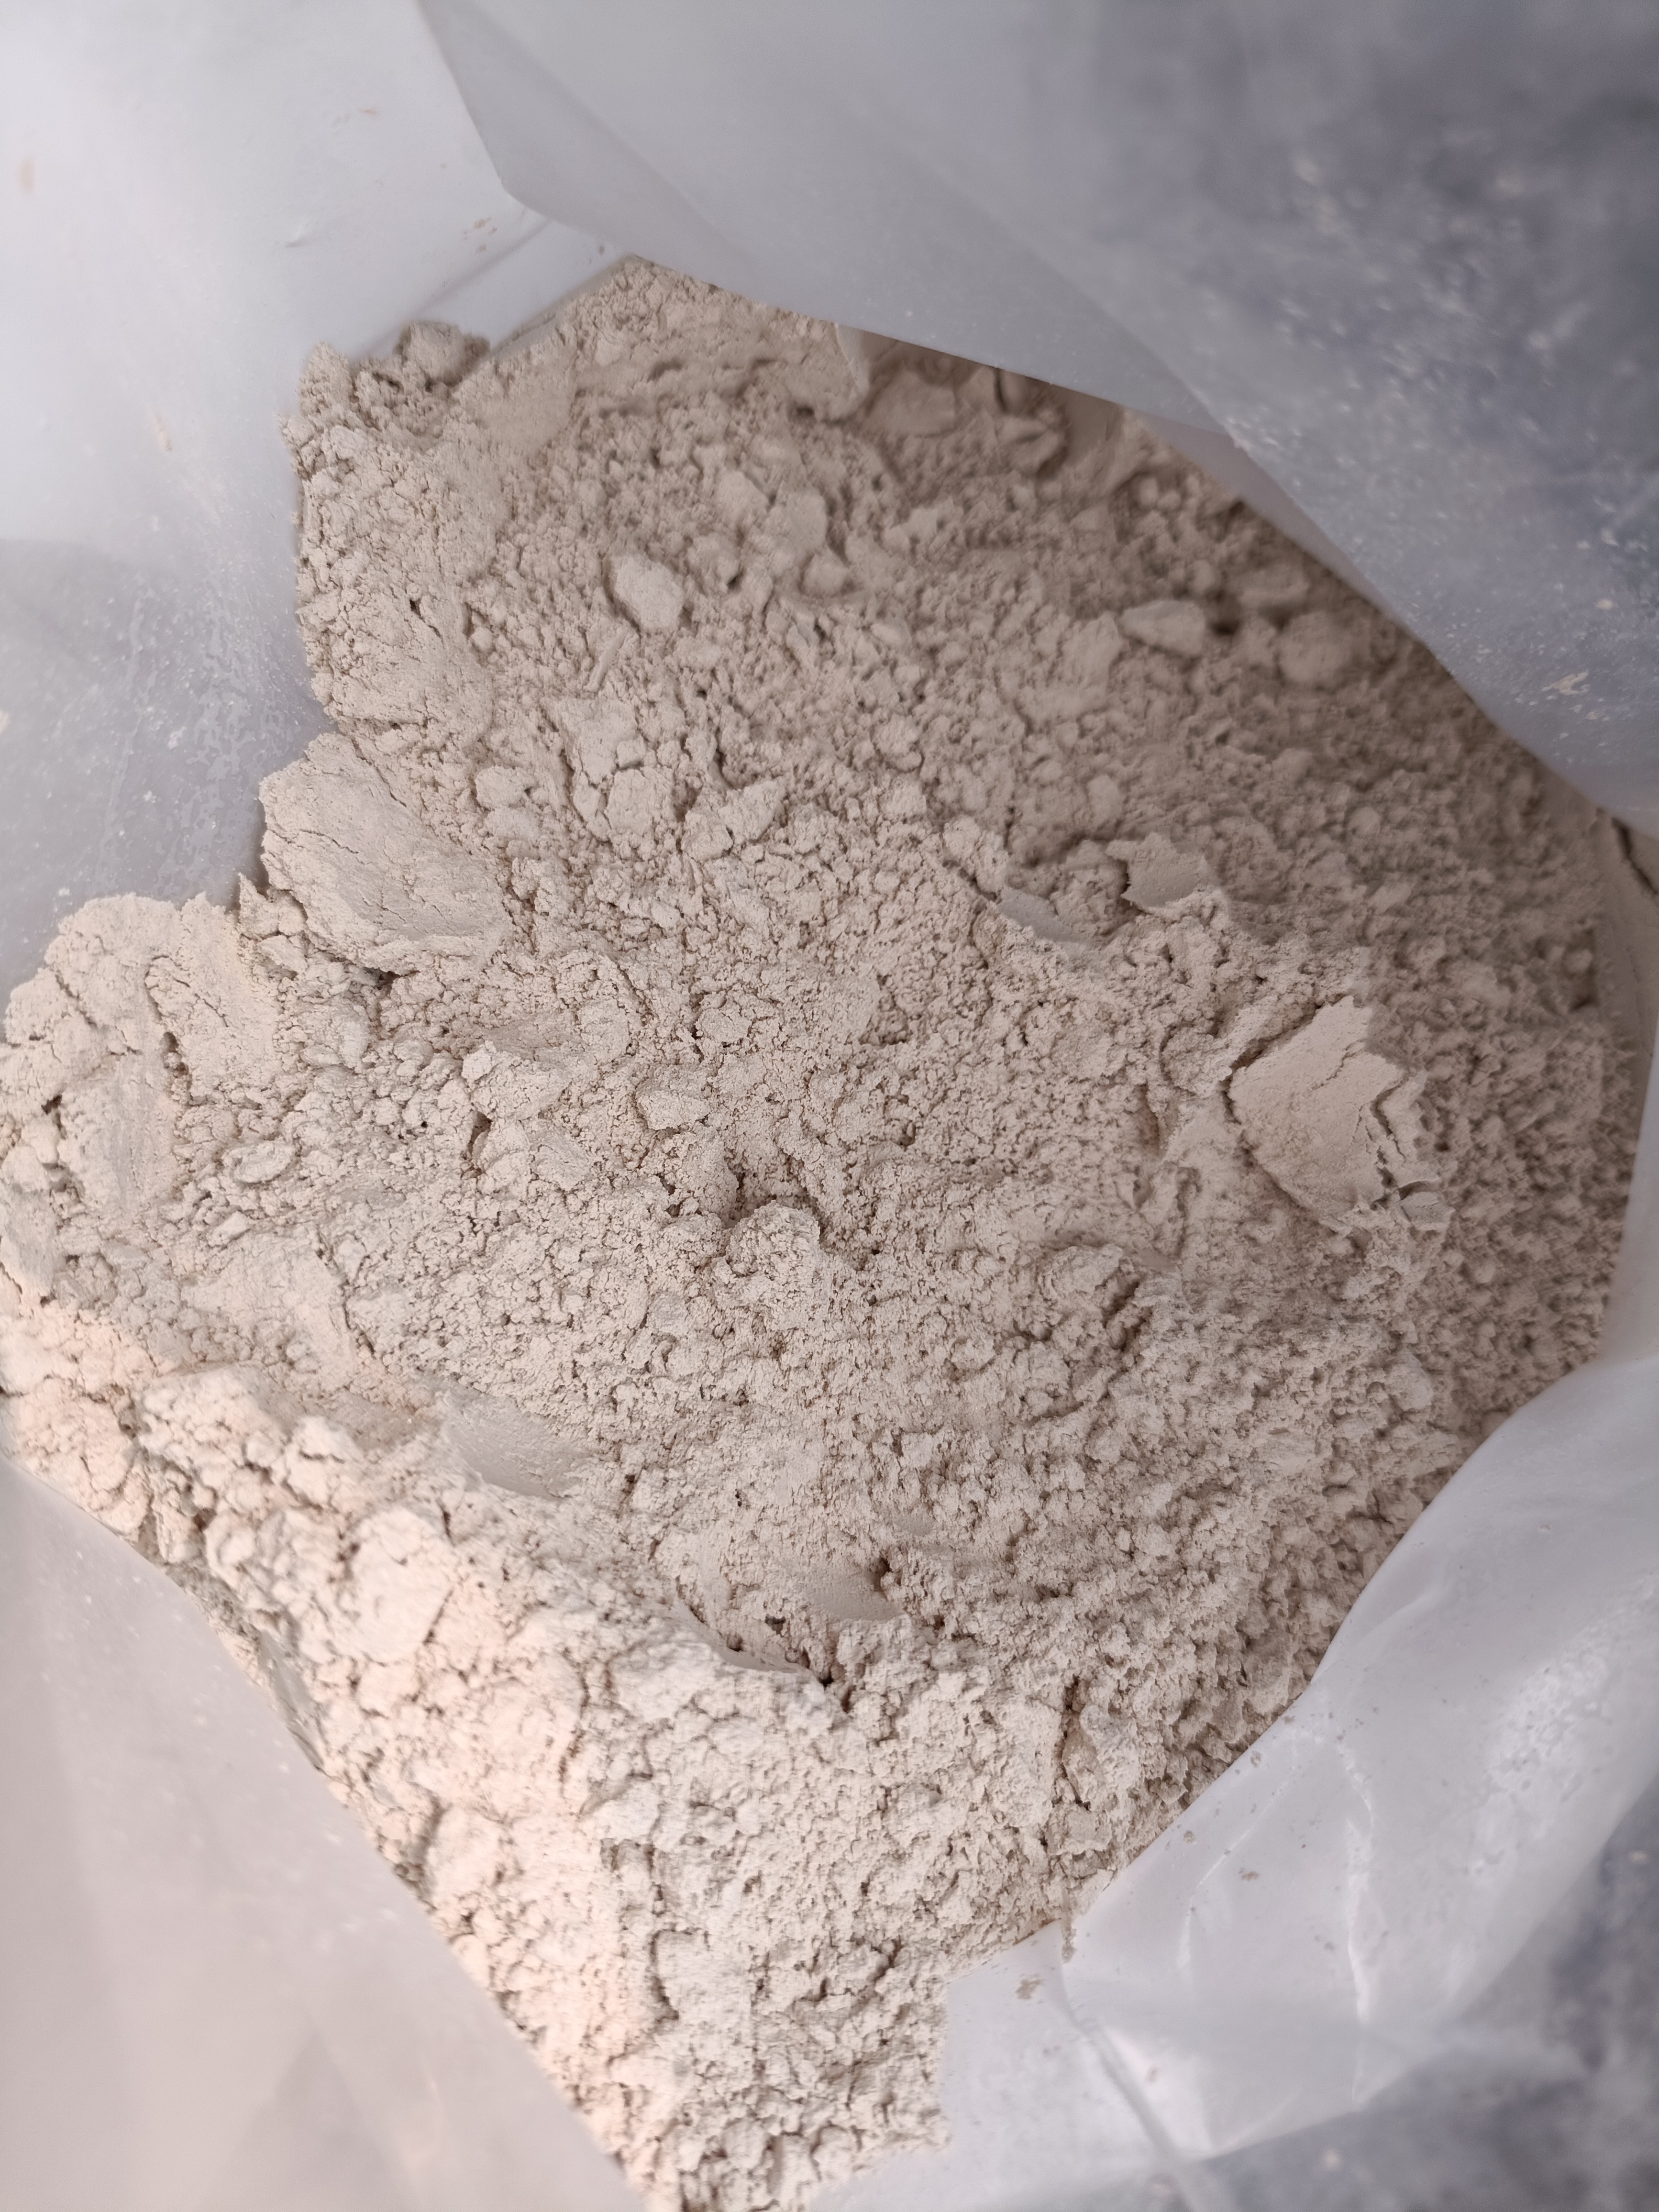 供应饲料载体用麦饭石粉 肥料添加剂用麦饭石粉 100目麦饭石粉